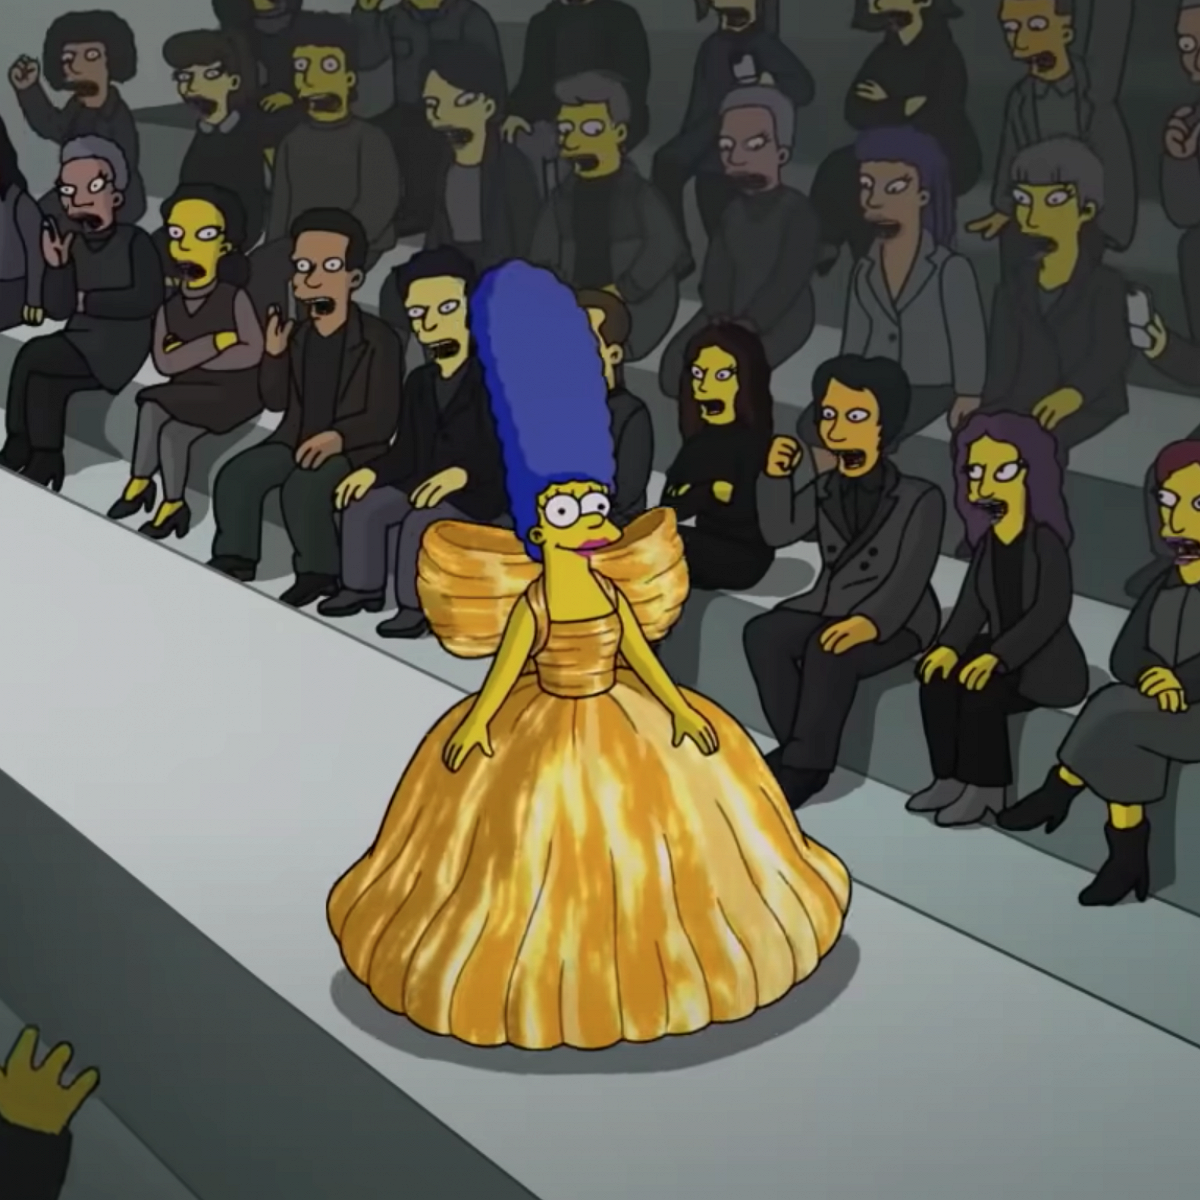 «Симпсоны» поучаствовали в показе Balenciaga. Так выглядит мода будущего, считают зрители